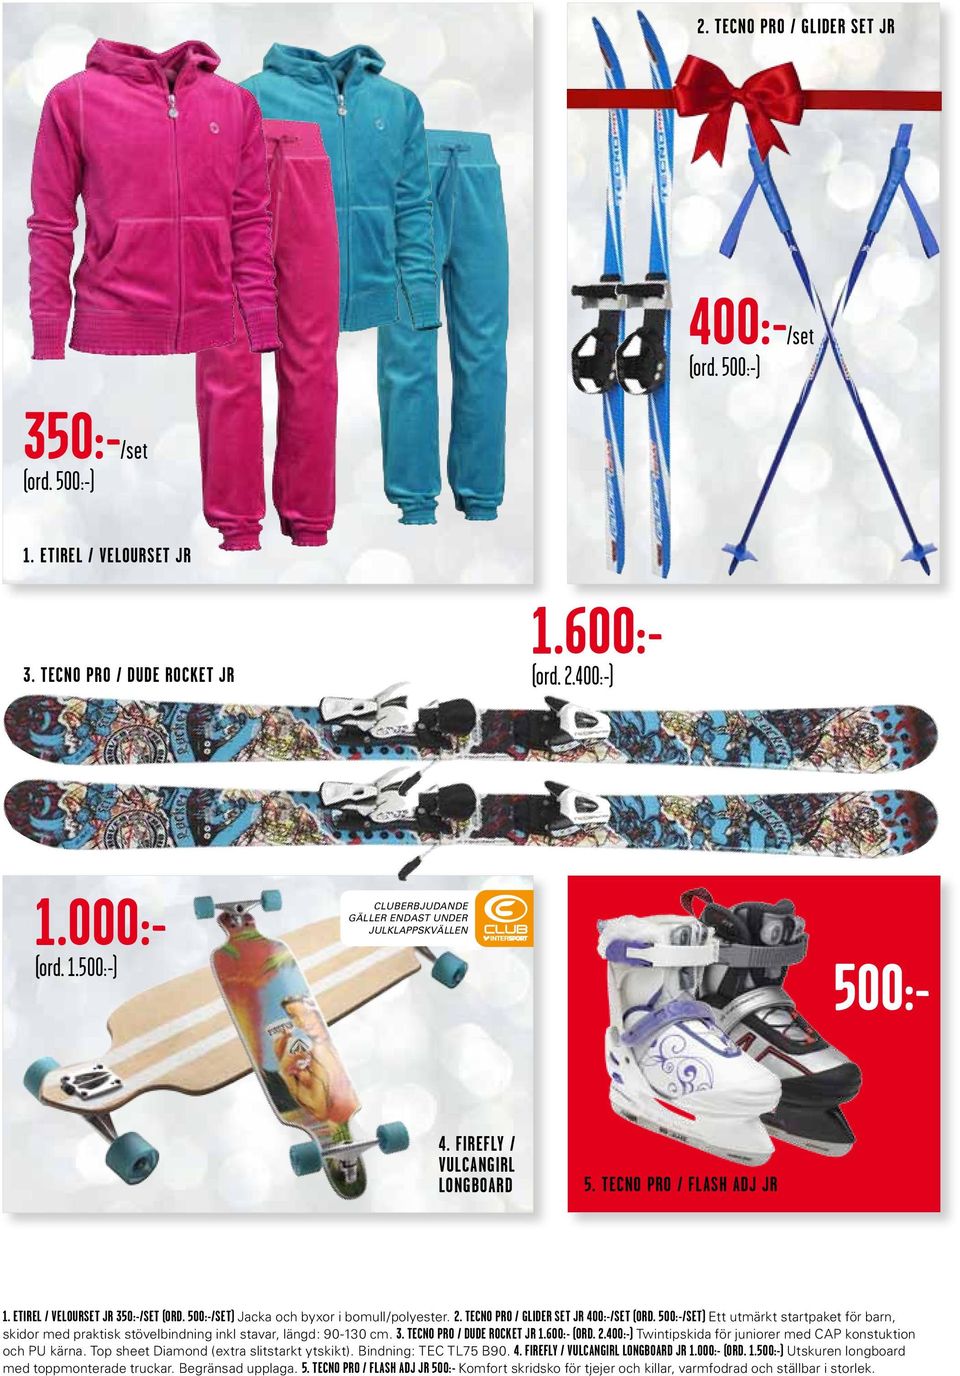 500:-/set) Ett utmärkt startpaket för barn, skidor med praktisk stövelbindning inkl stavar, längd: 90-130 cm. 3. tecno pro / dude rocket jr 1.600:- (ord. 2.